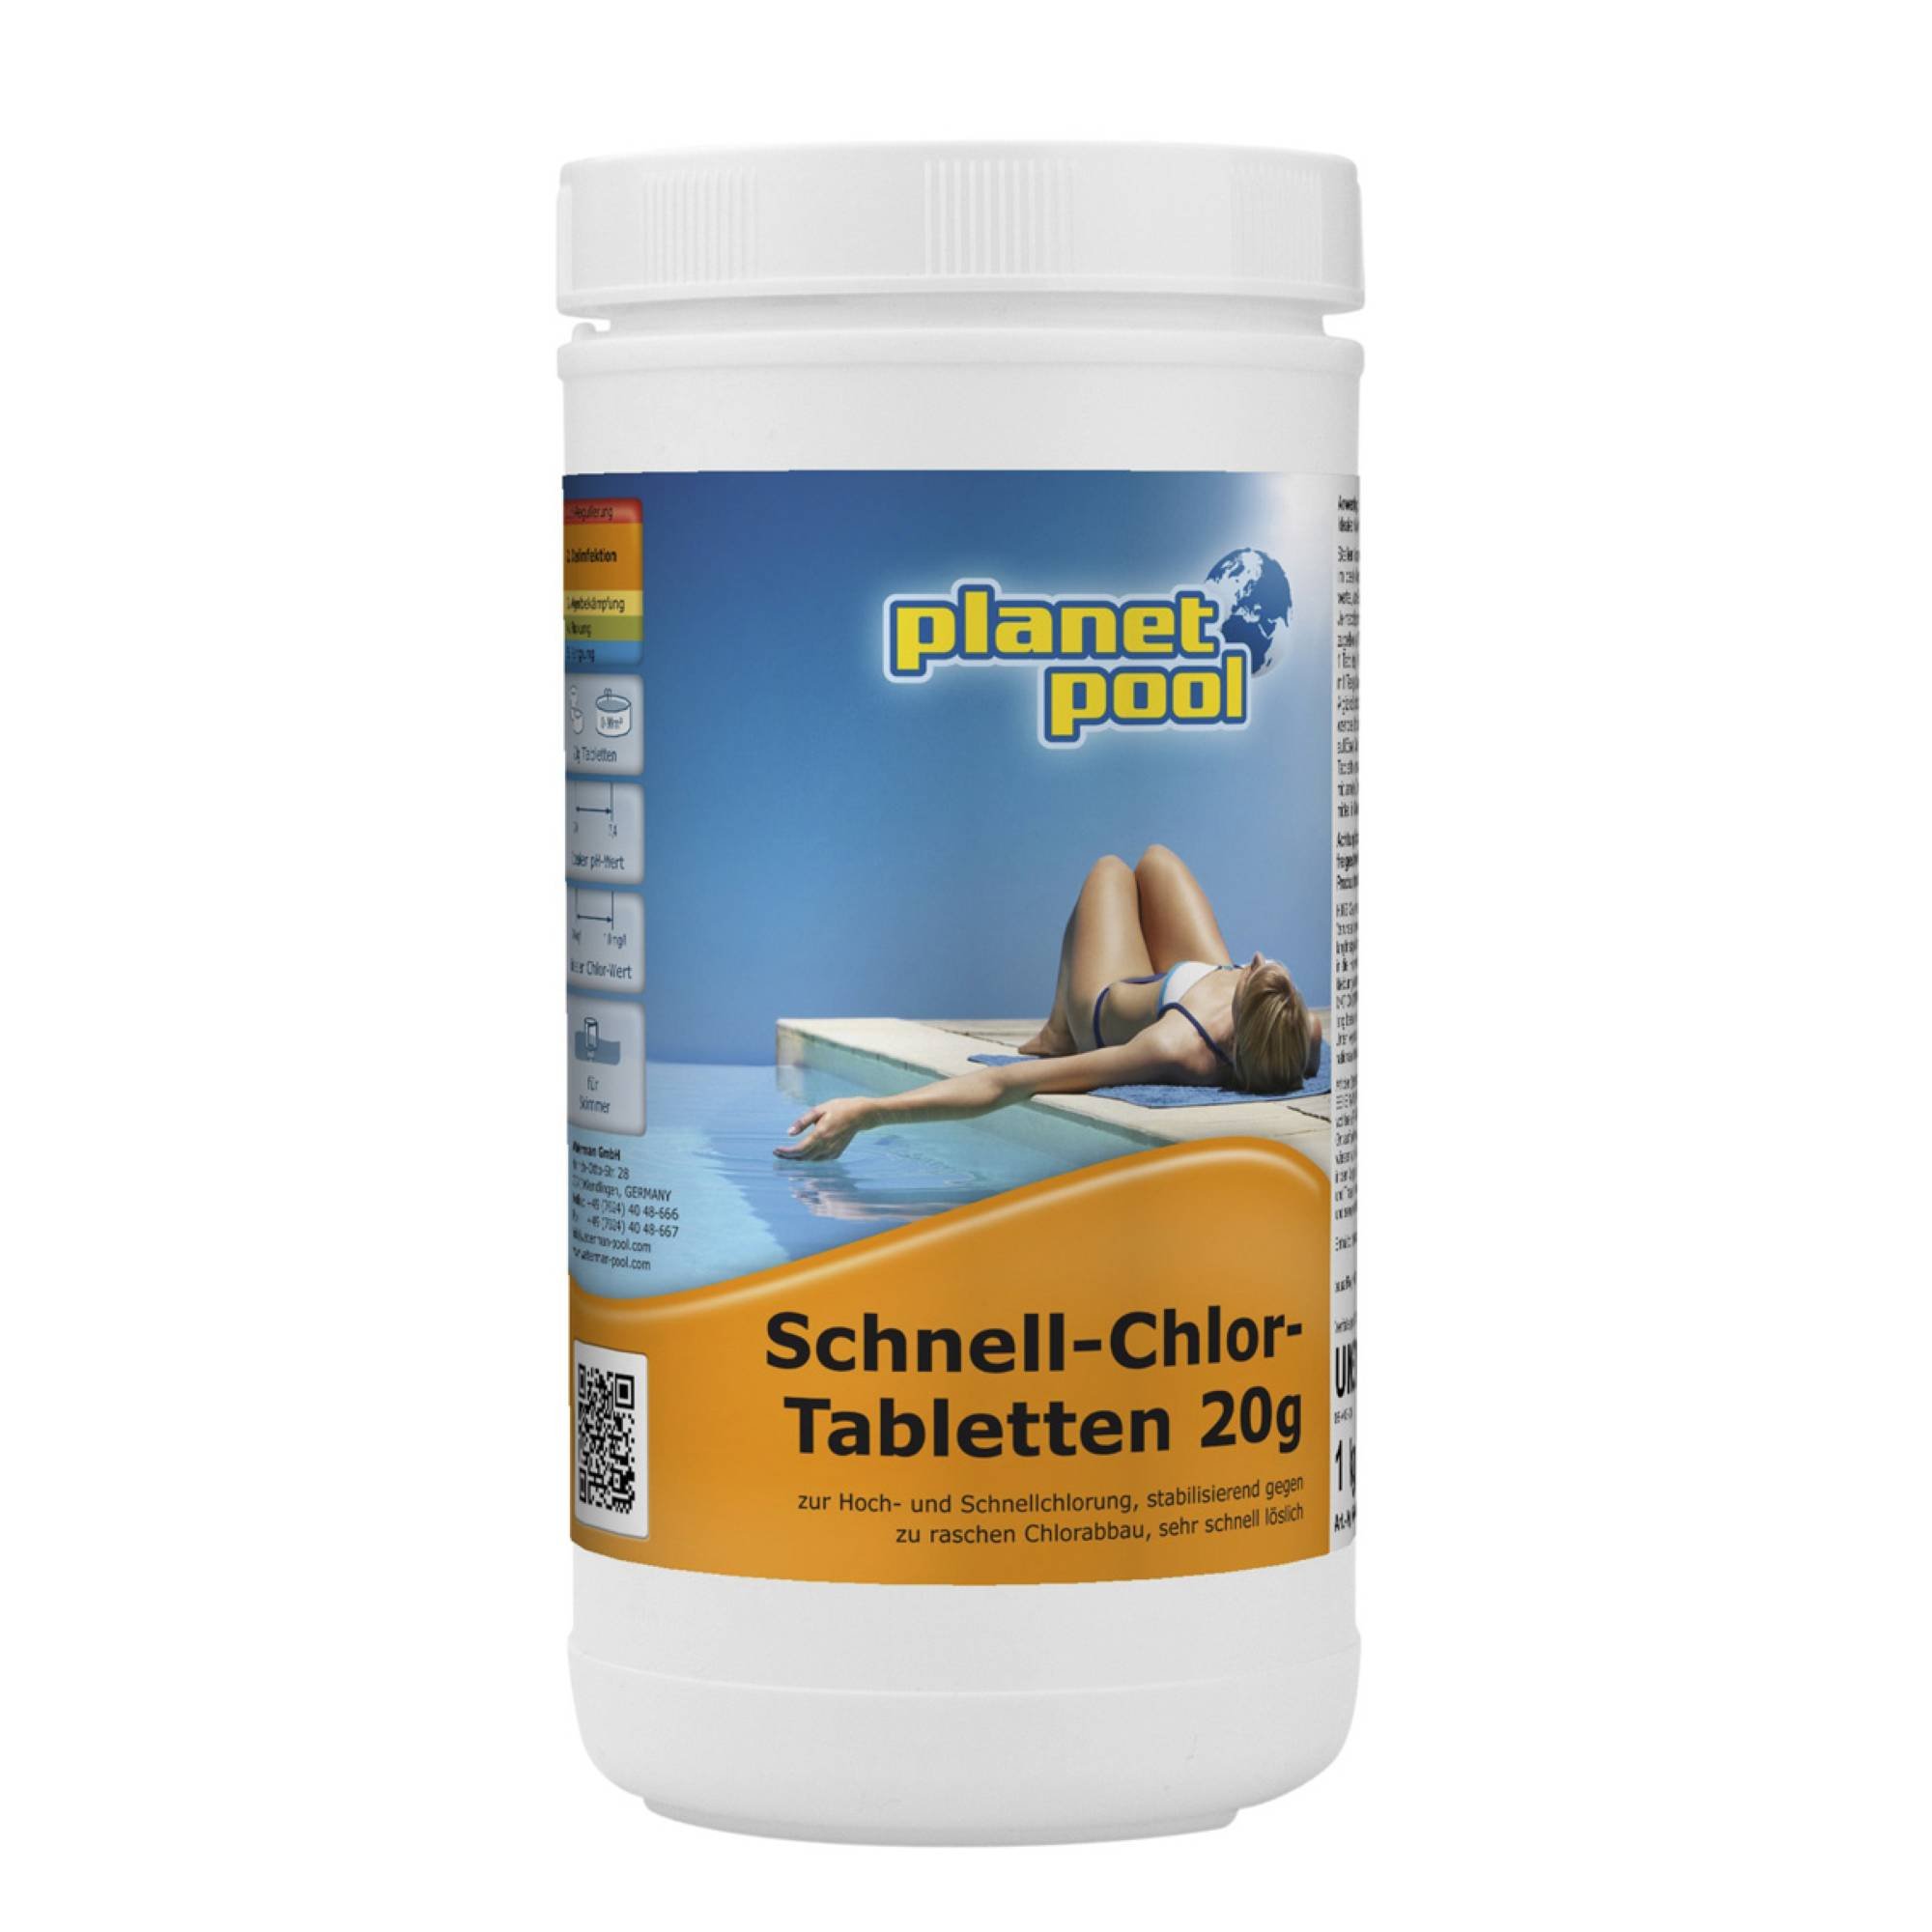 Planet Pool Schnell-Chlor-Tabletten 20g, 1kg